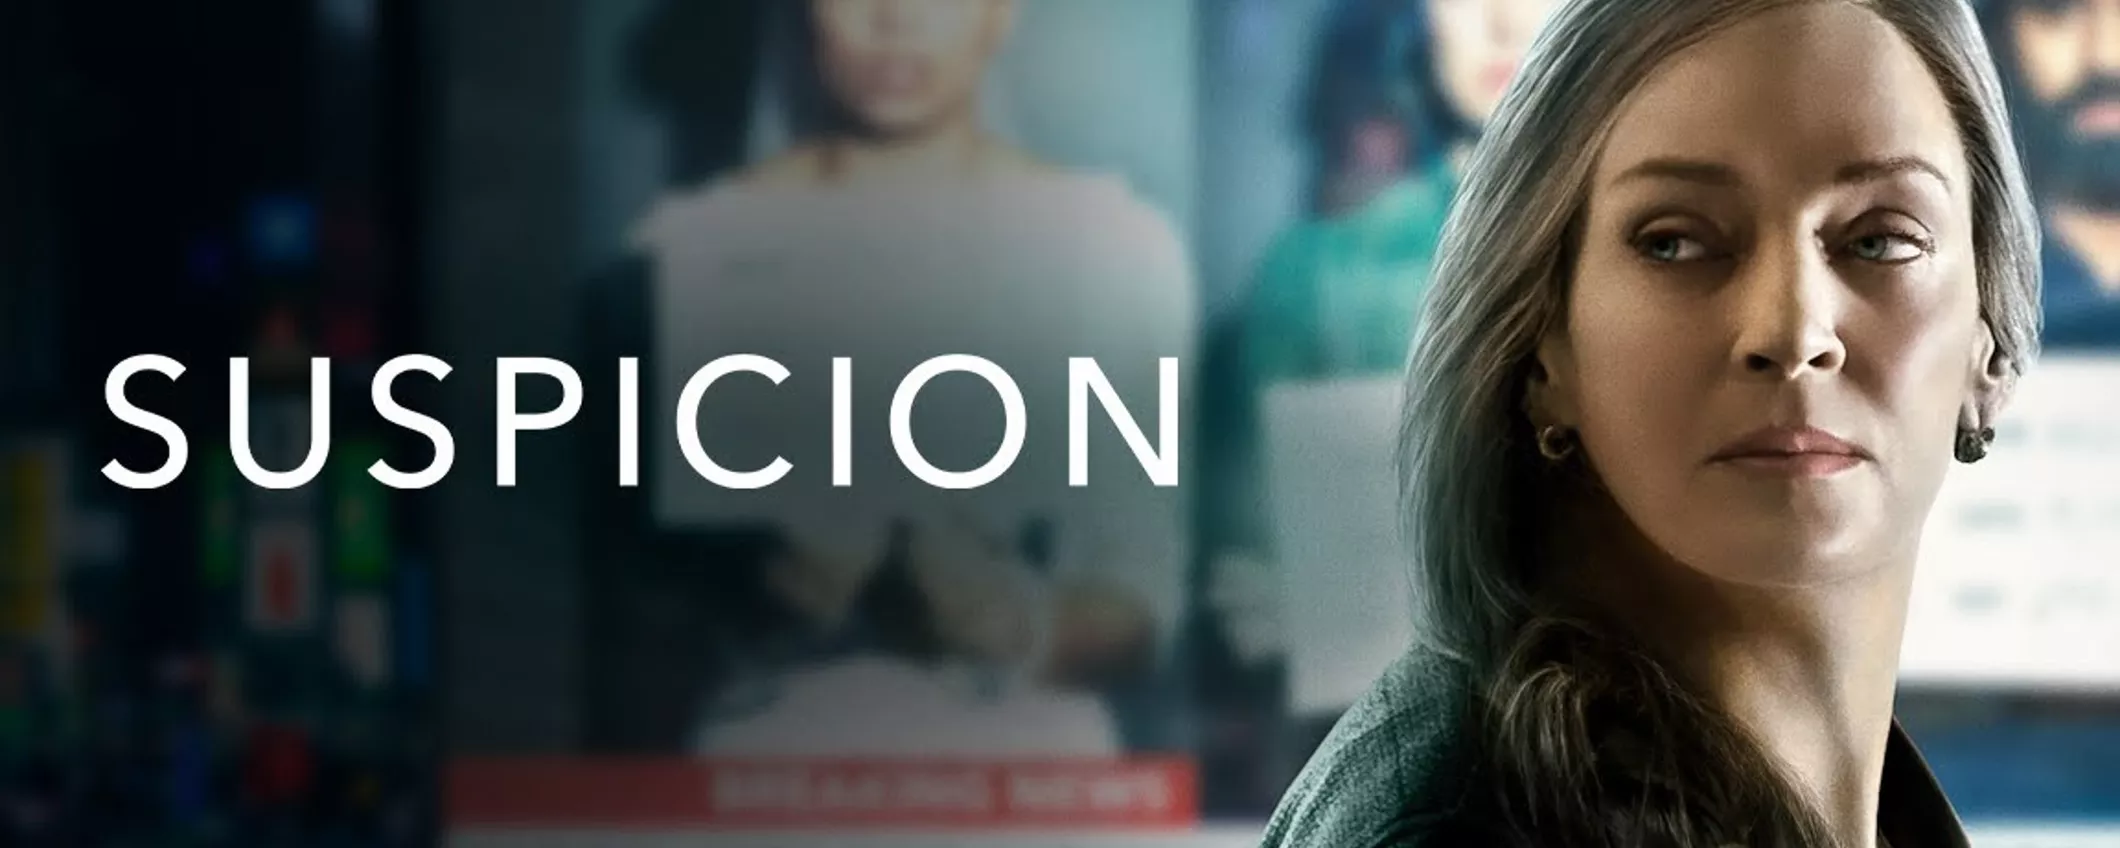 Suspicion è la nuova serie thriller di Apple TV+: trailer, trama e cast